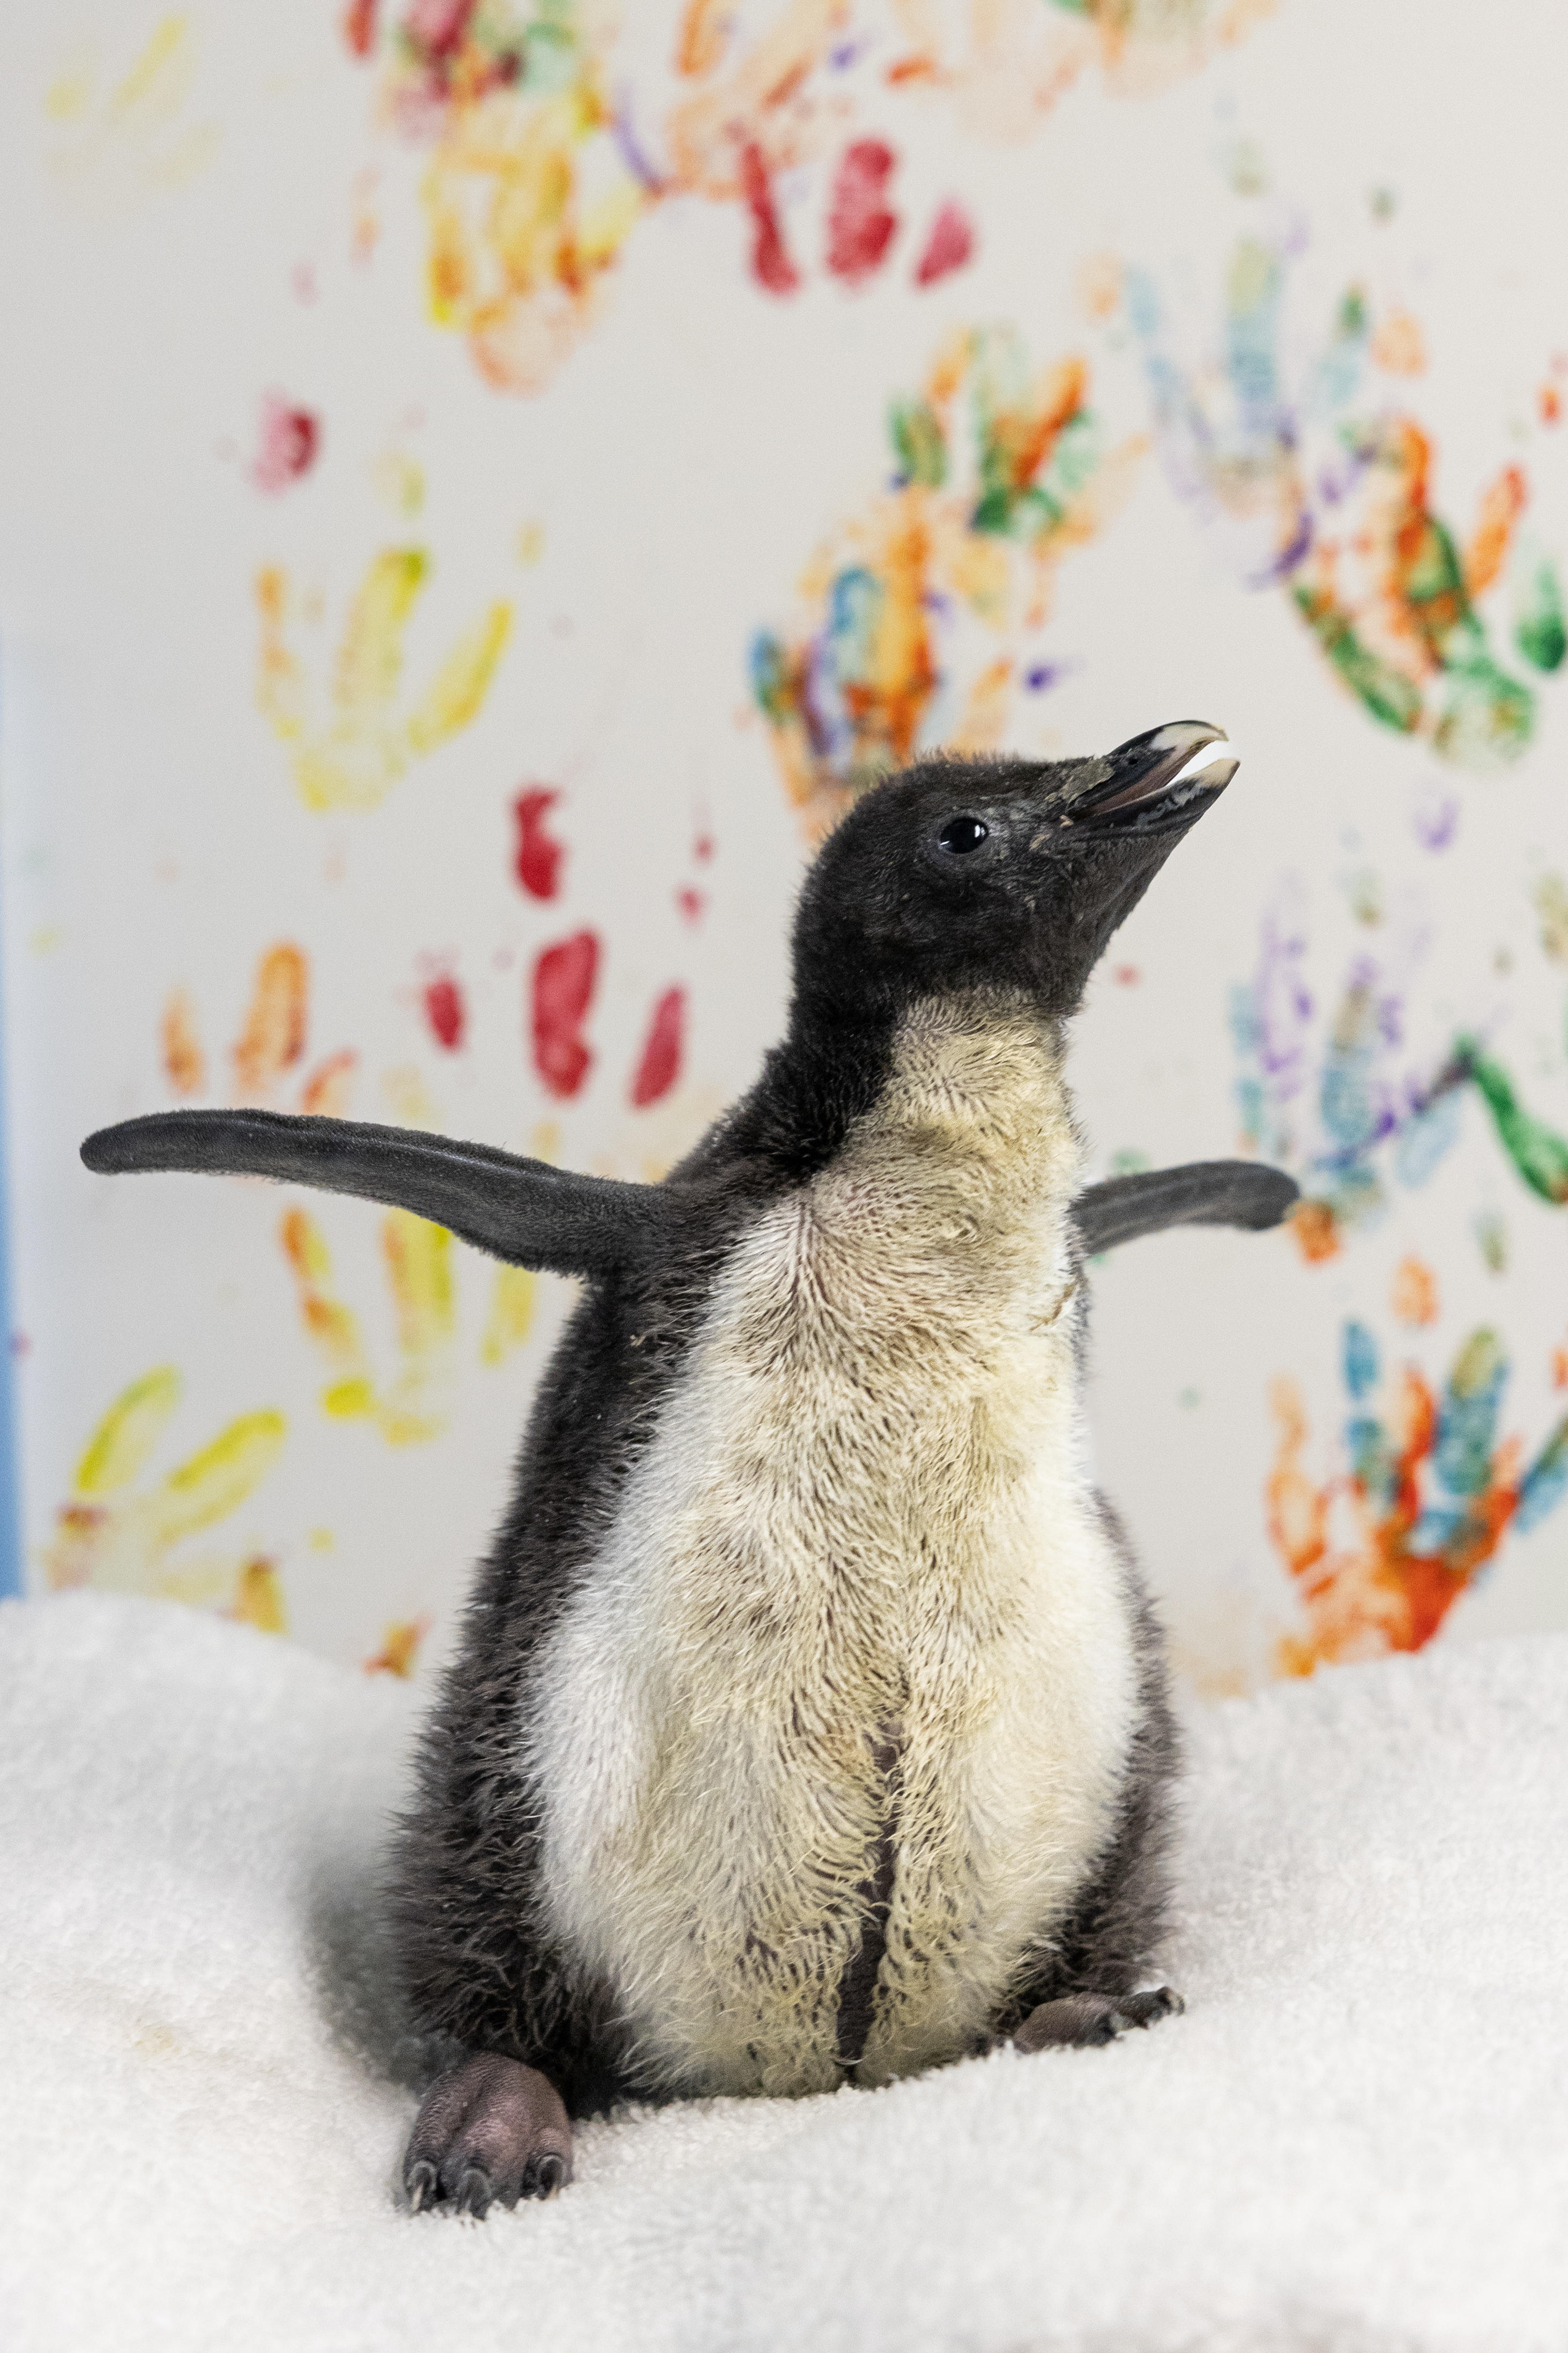 Shedd Aquarium rockhopper penguins 